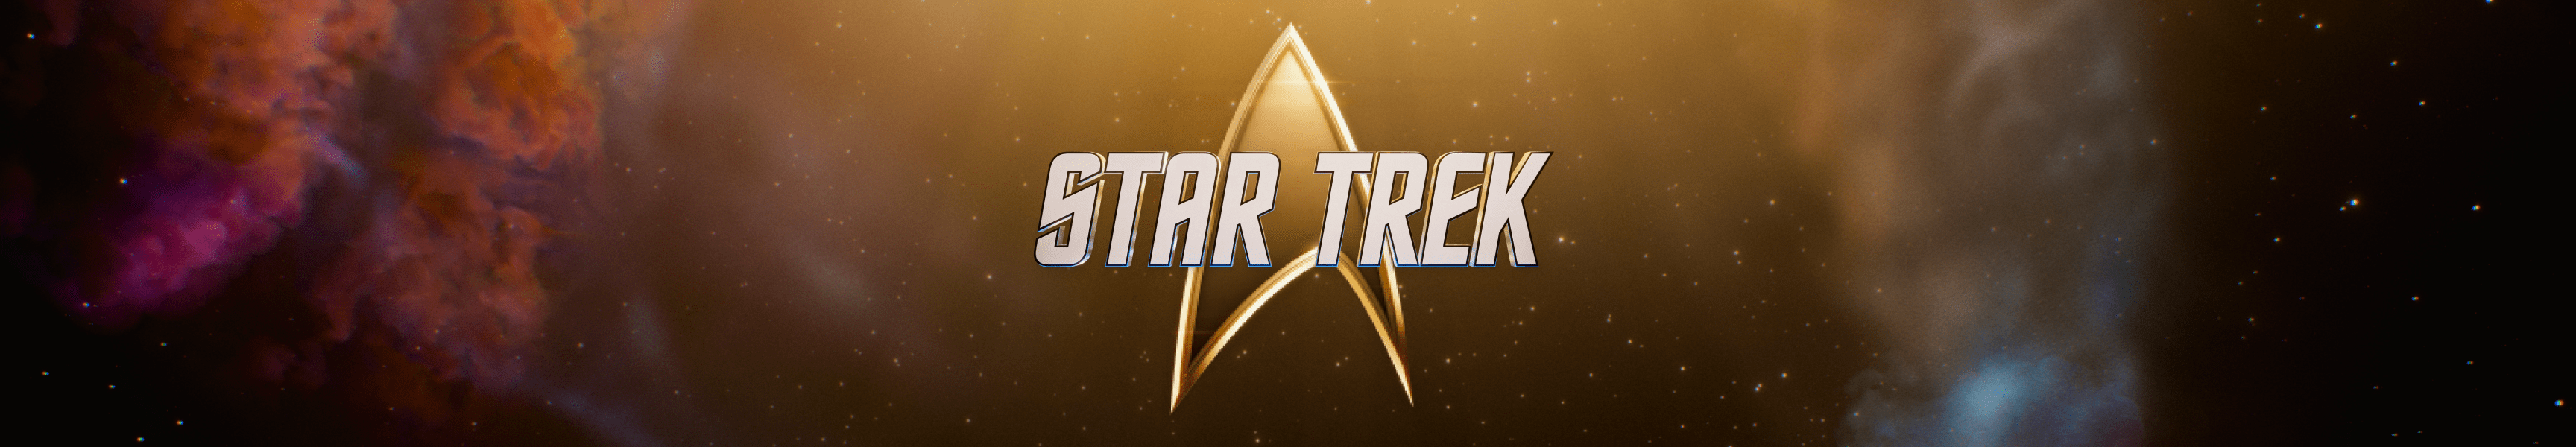 Star Trek Primer día de contacto